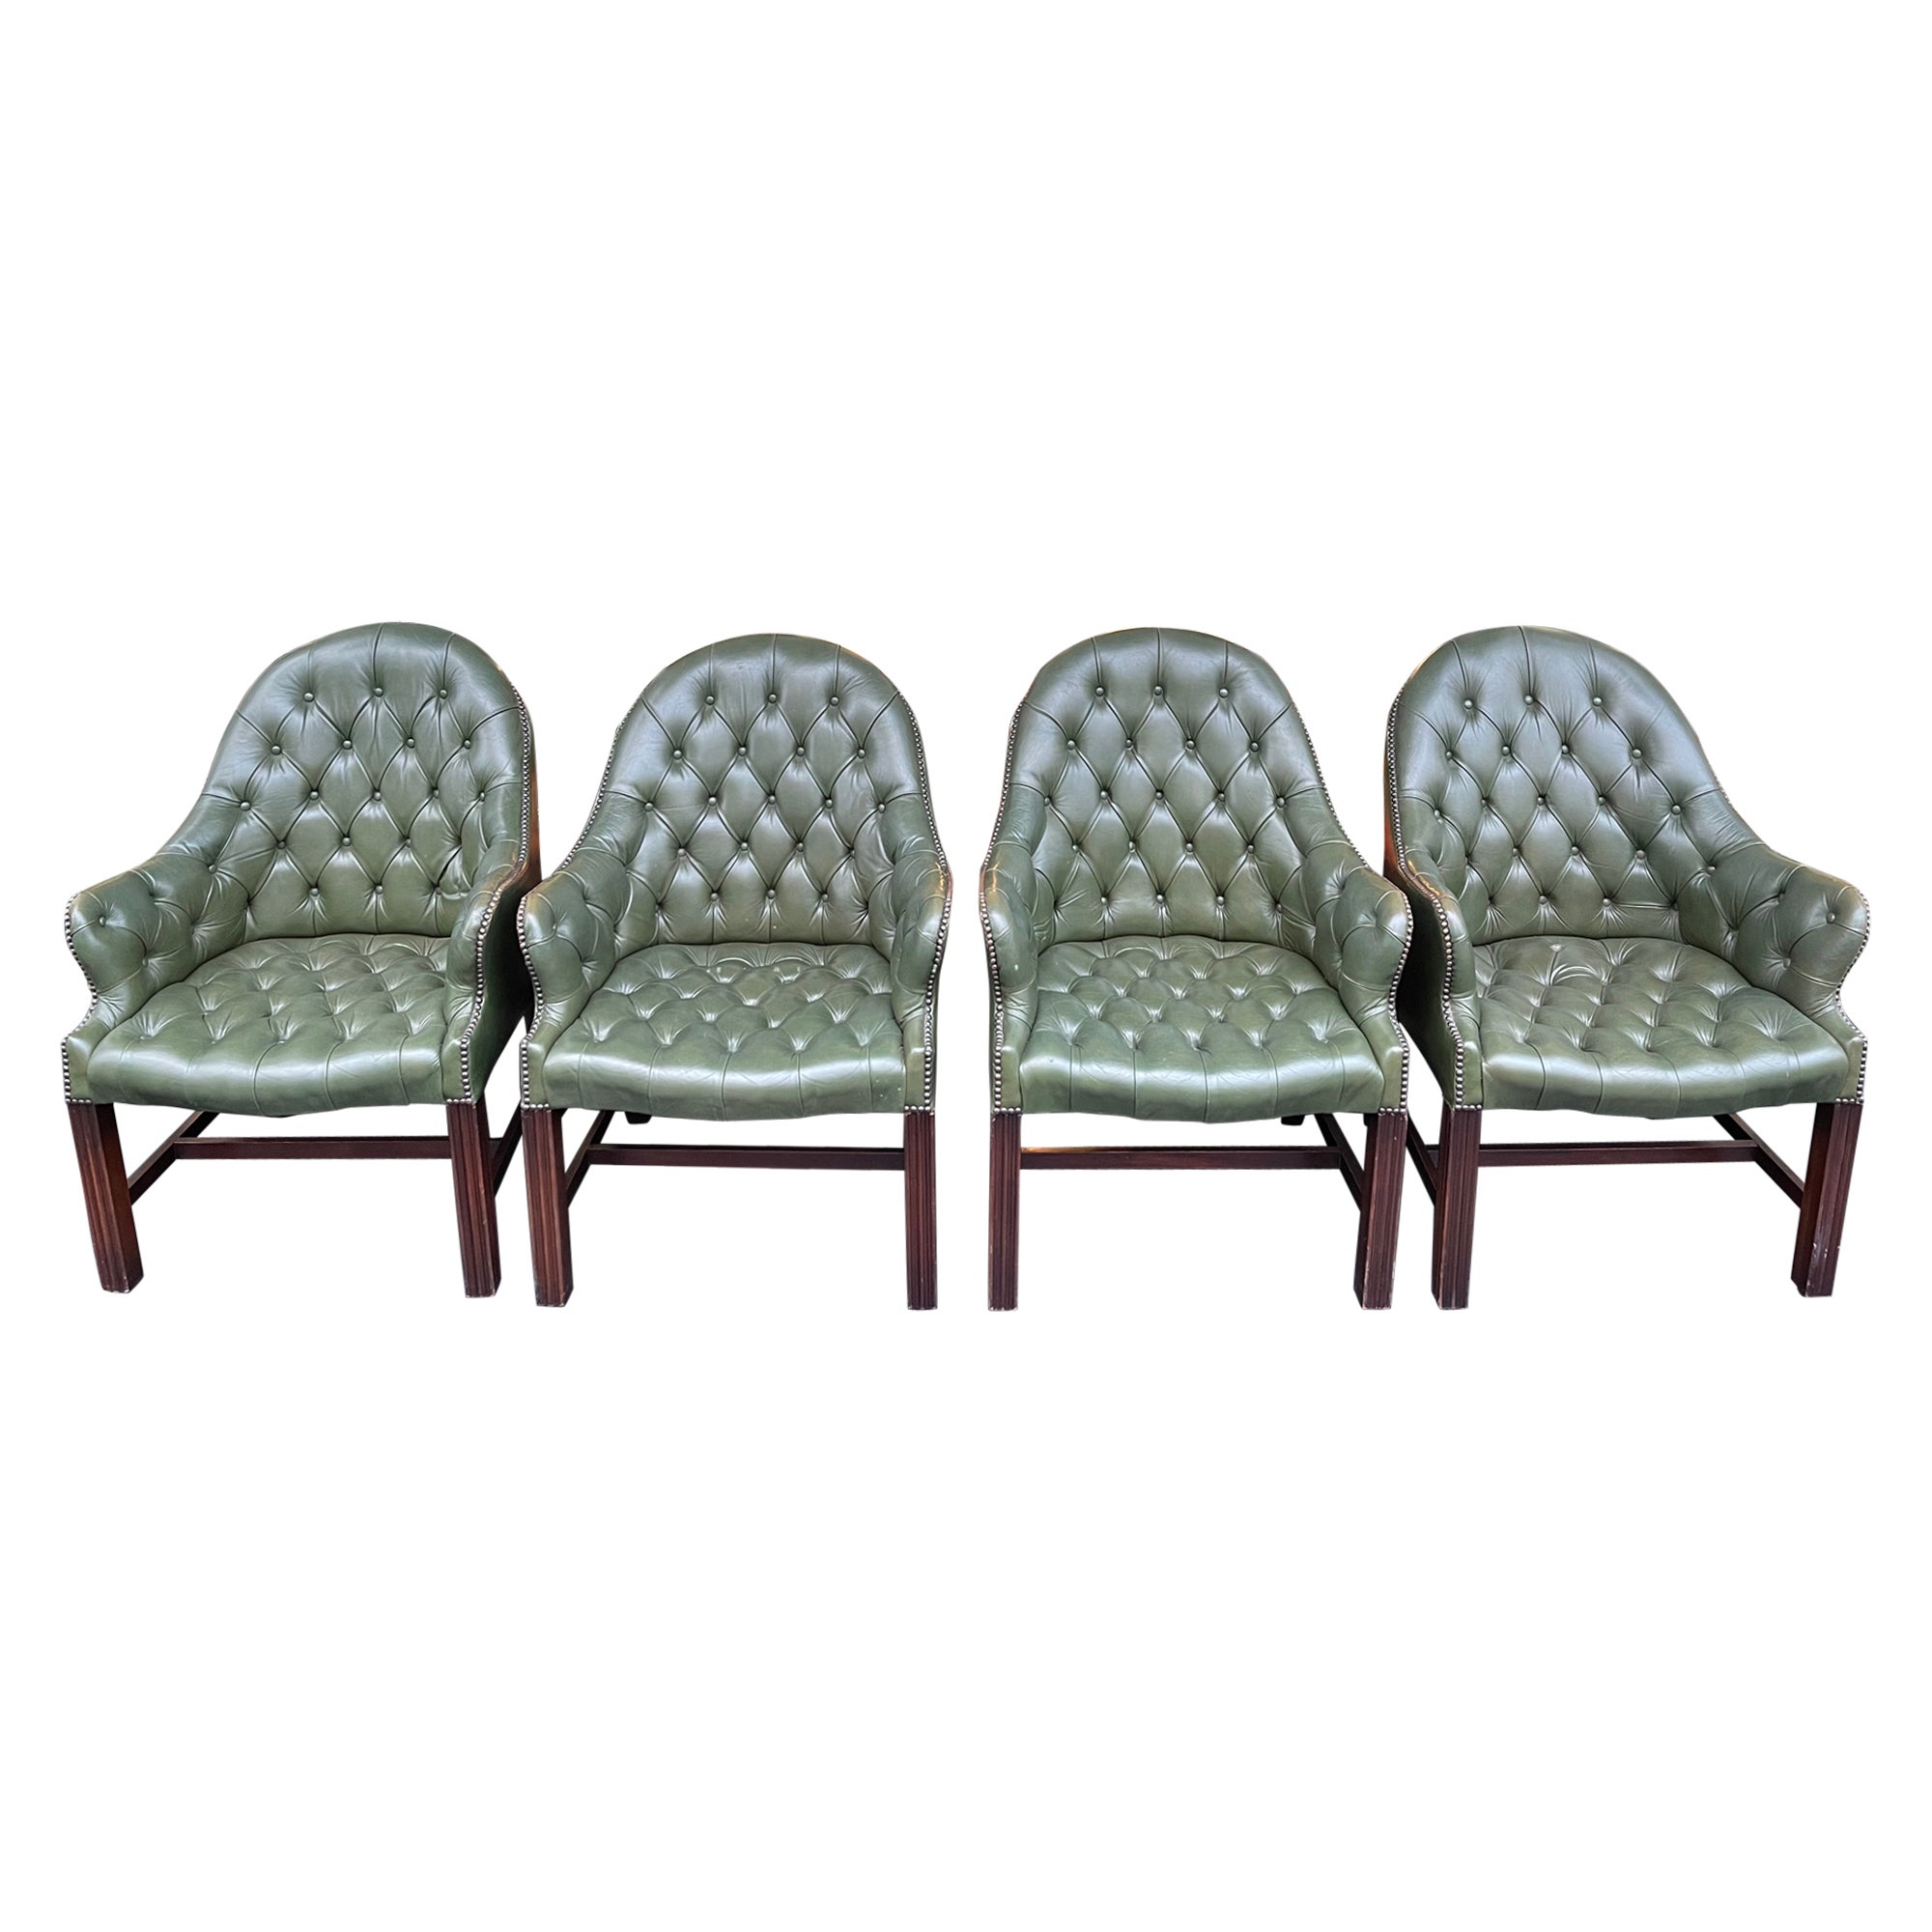 Ensemble de 4 chaises longues / fauteuils anglais Chesterfield, WADE, 20ème siècle en vente